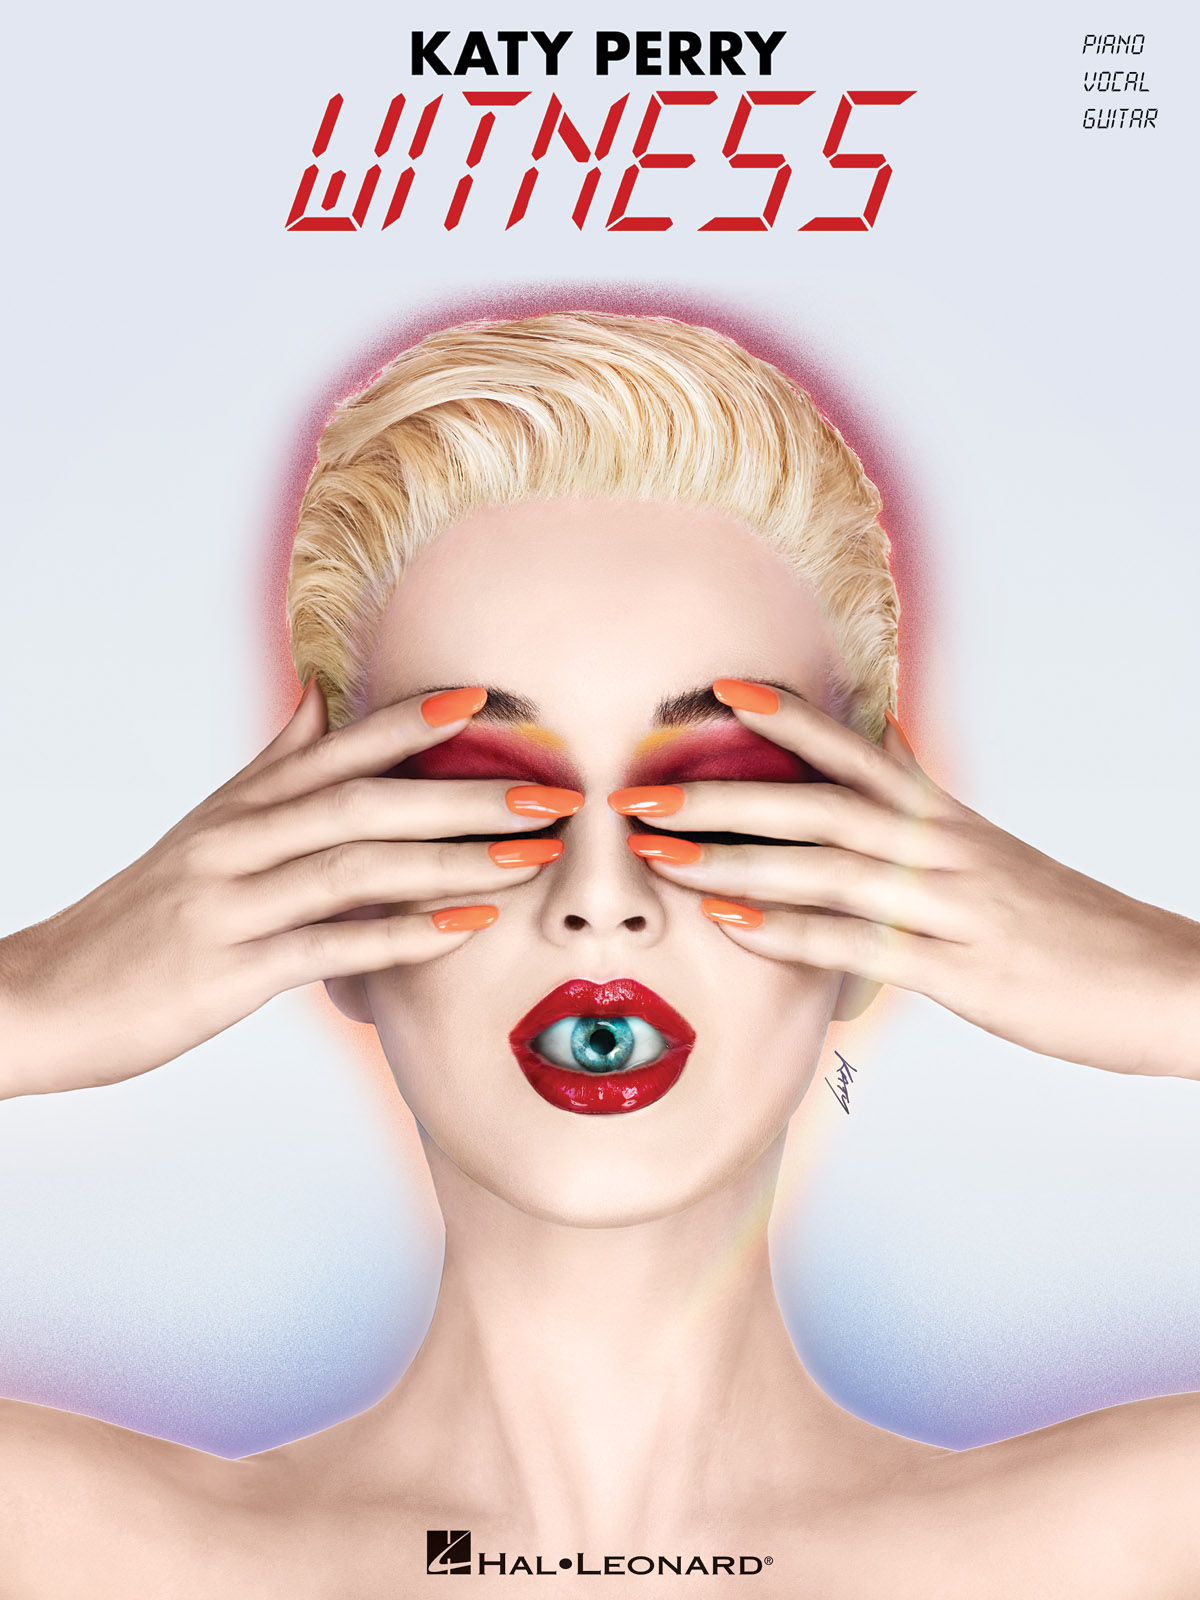 Katy Perry - Witness - noty pro zpěv a klavír s akordy na kytaru